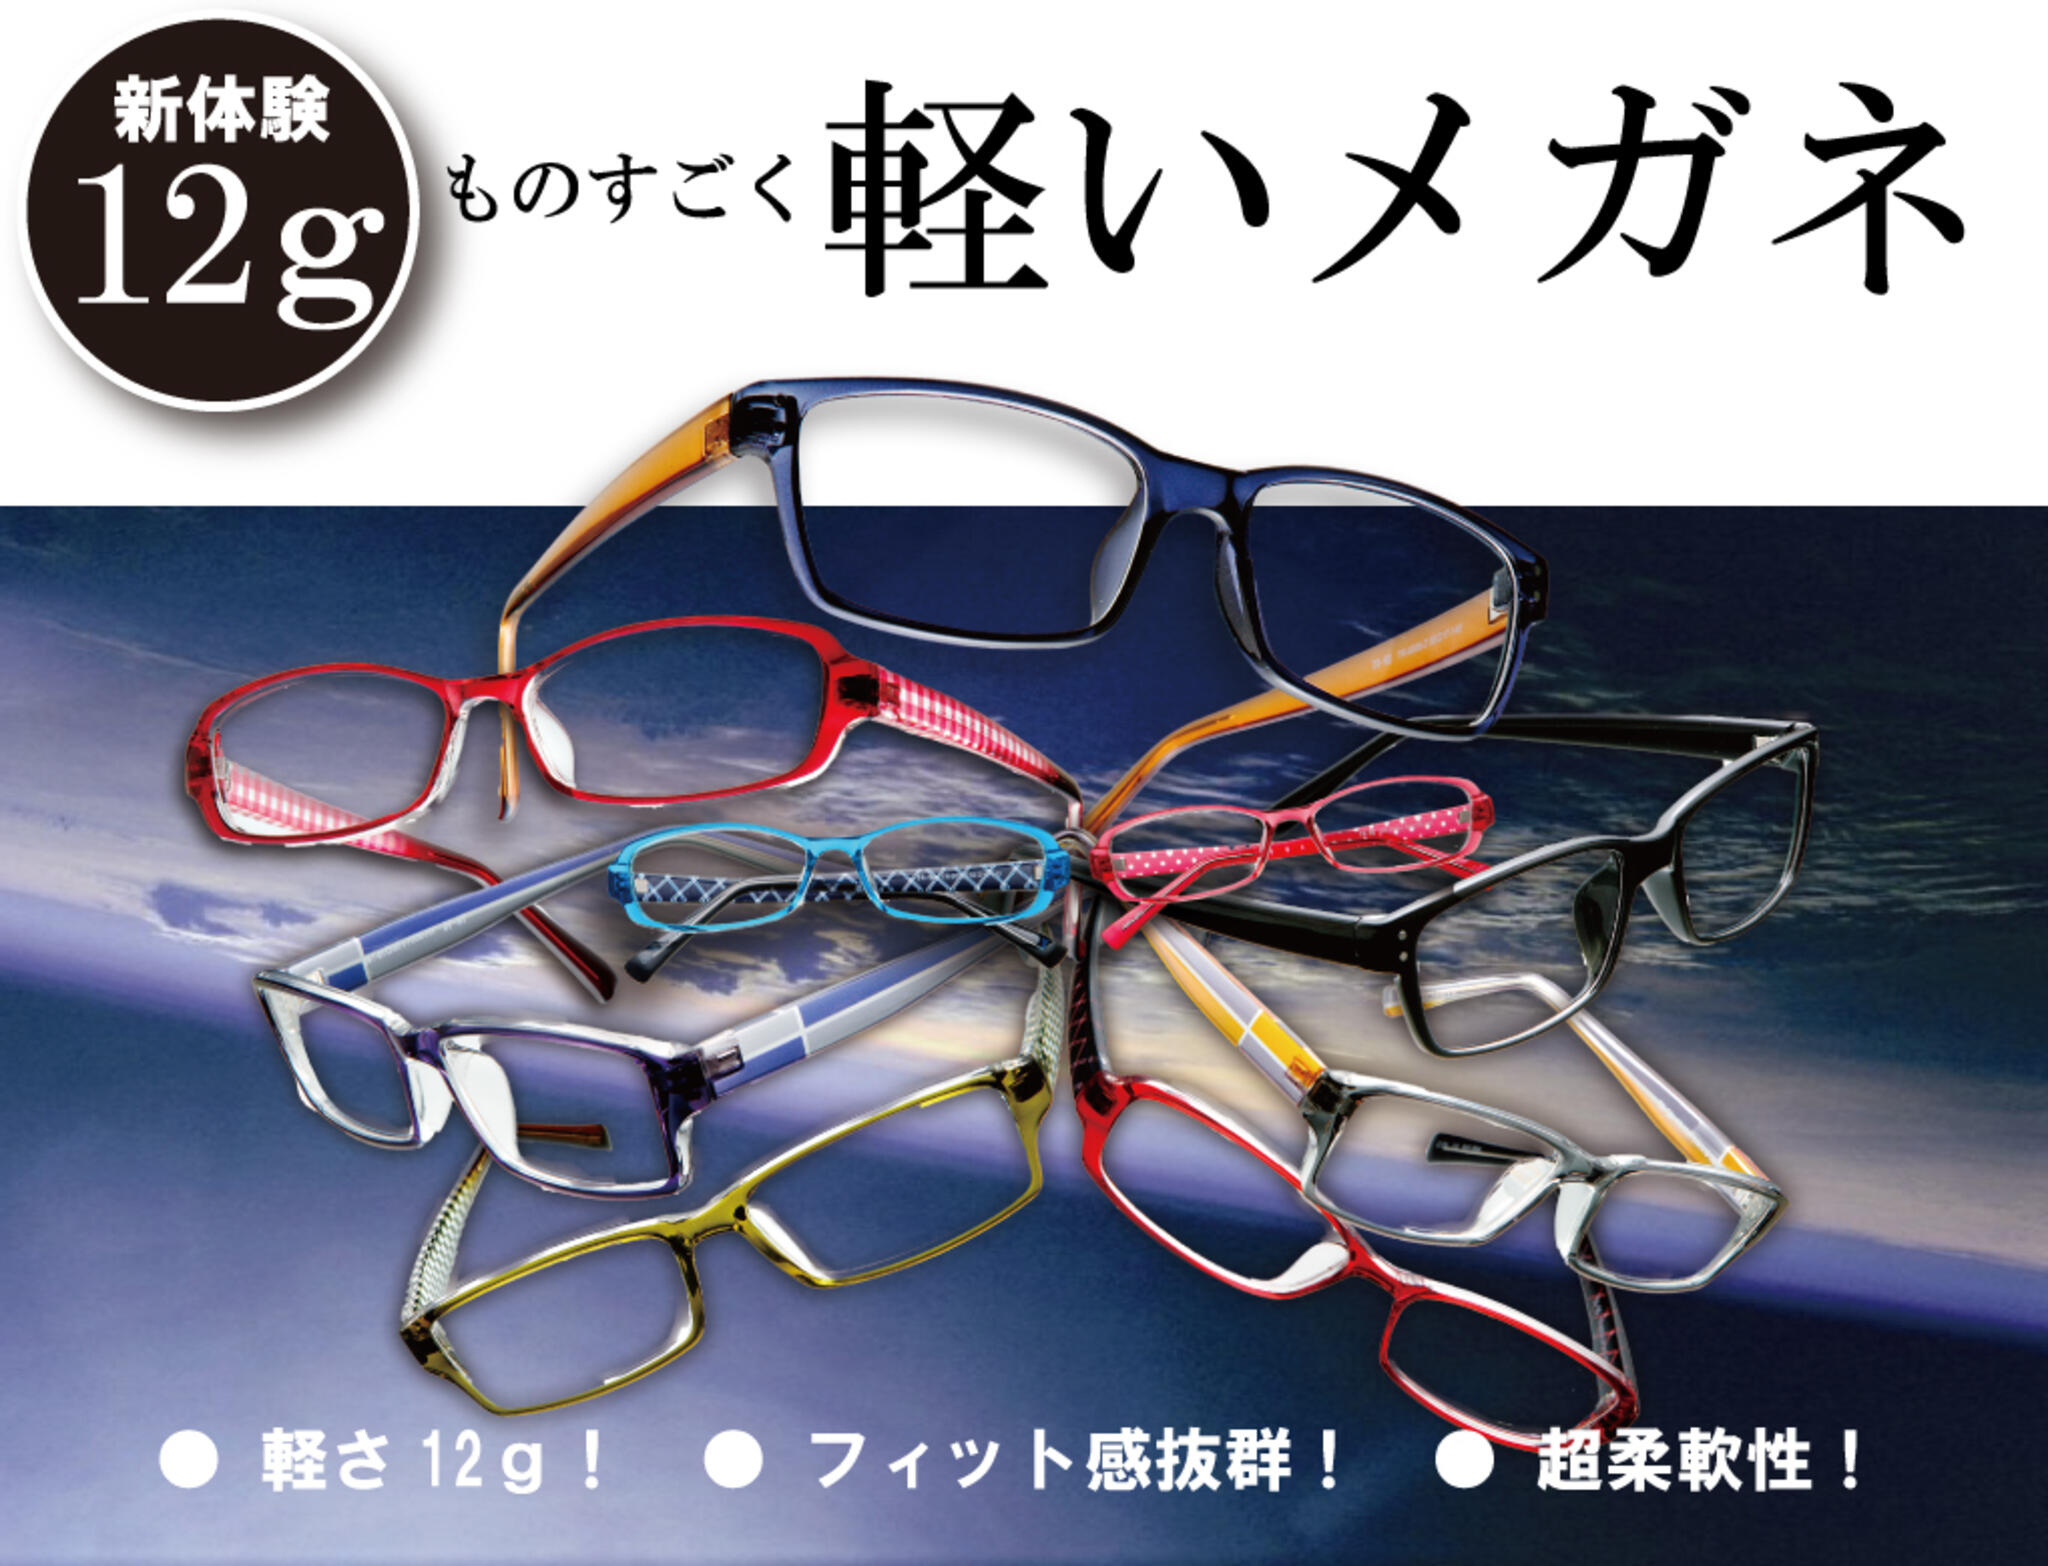 ドクターアイズ 鳥取米子店からのお知らせ(軽い！メガネはこれがおすすめ！｜新体験の12ｇの真空フレーム)に関する写真